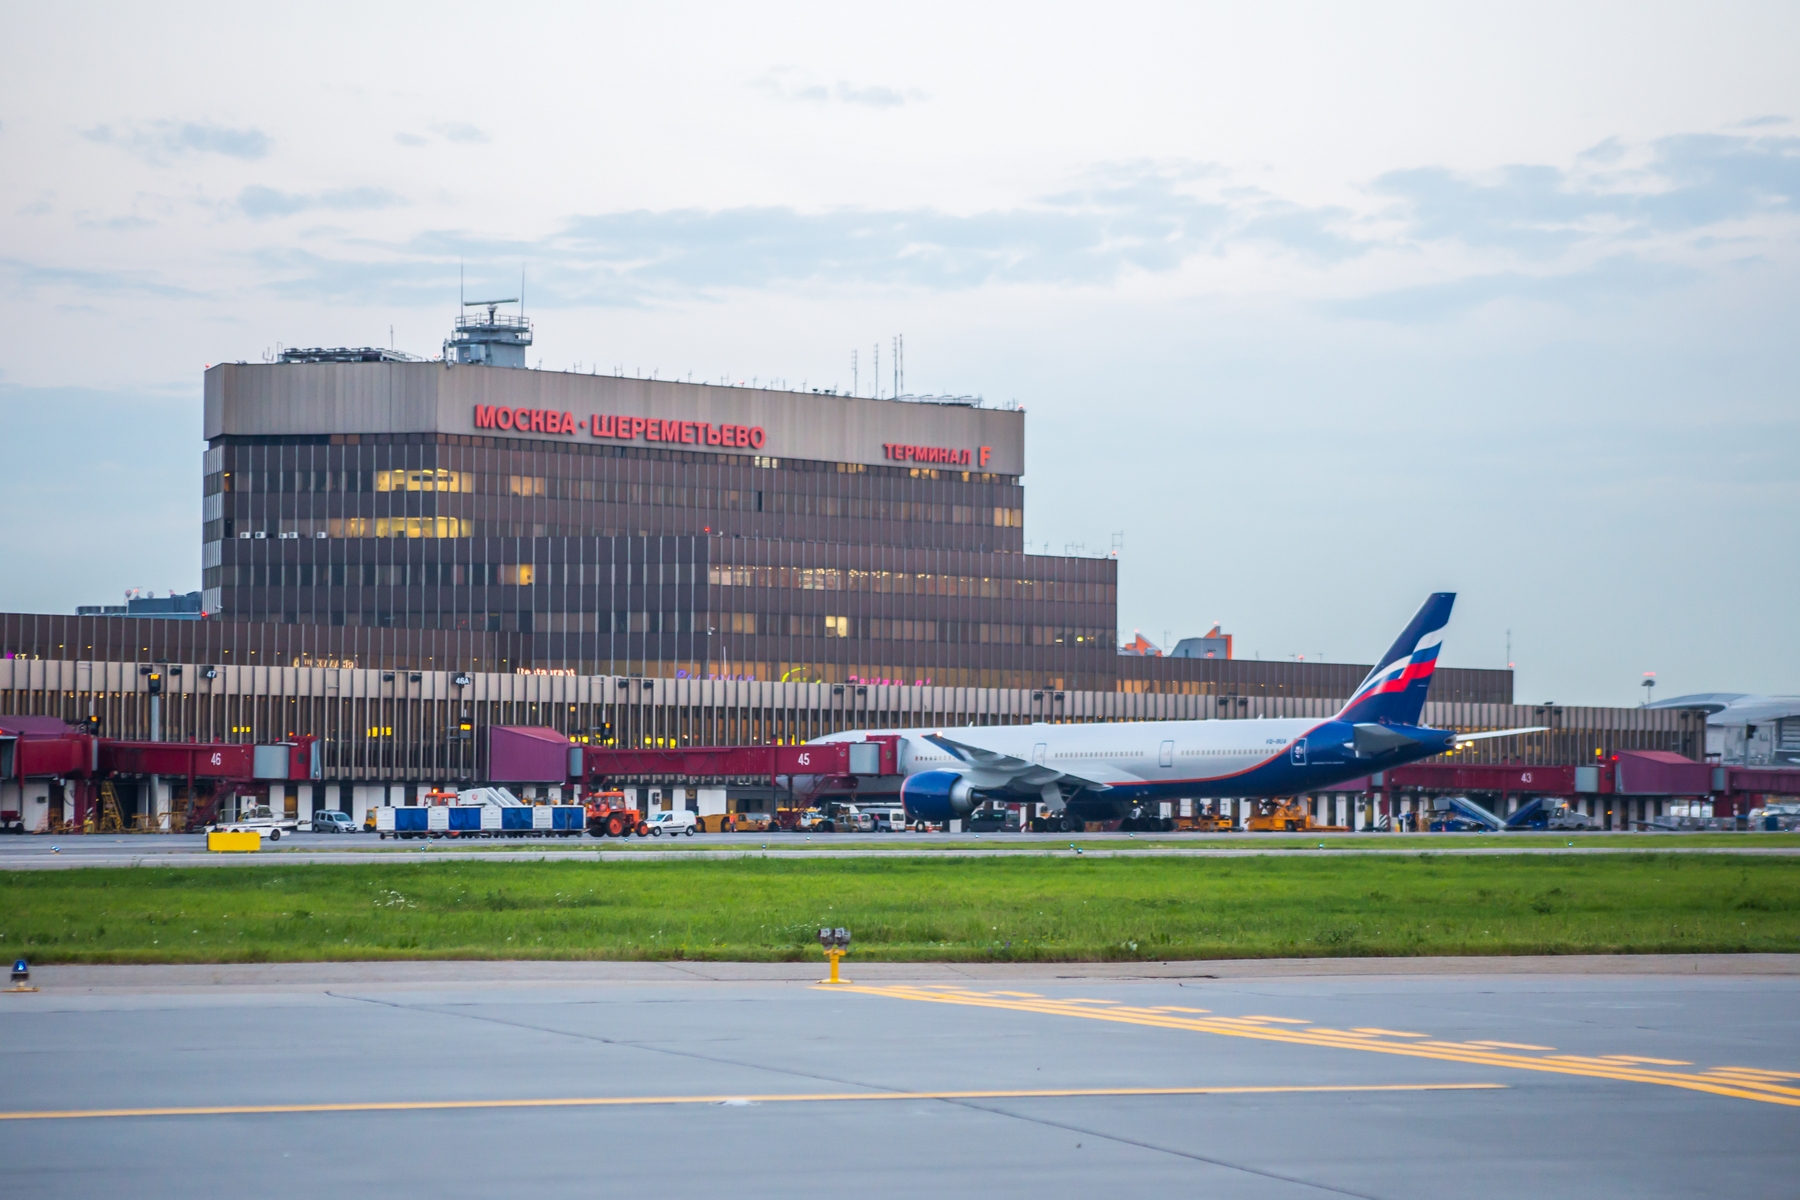 Все терминалы аэропорта "Шереметьево" к 2018 году соединит общий переход